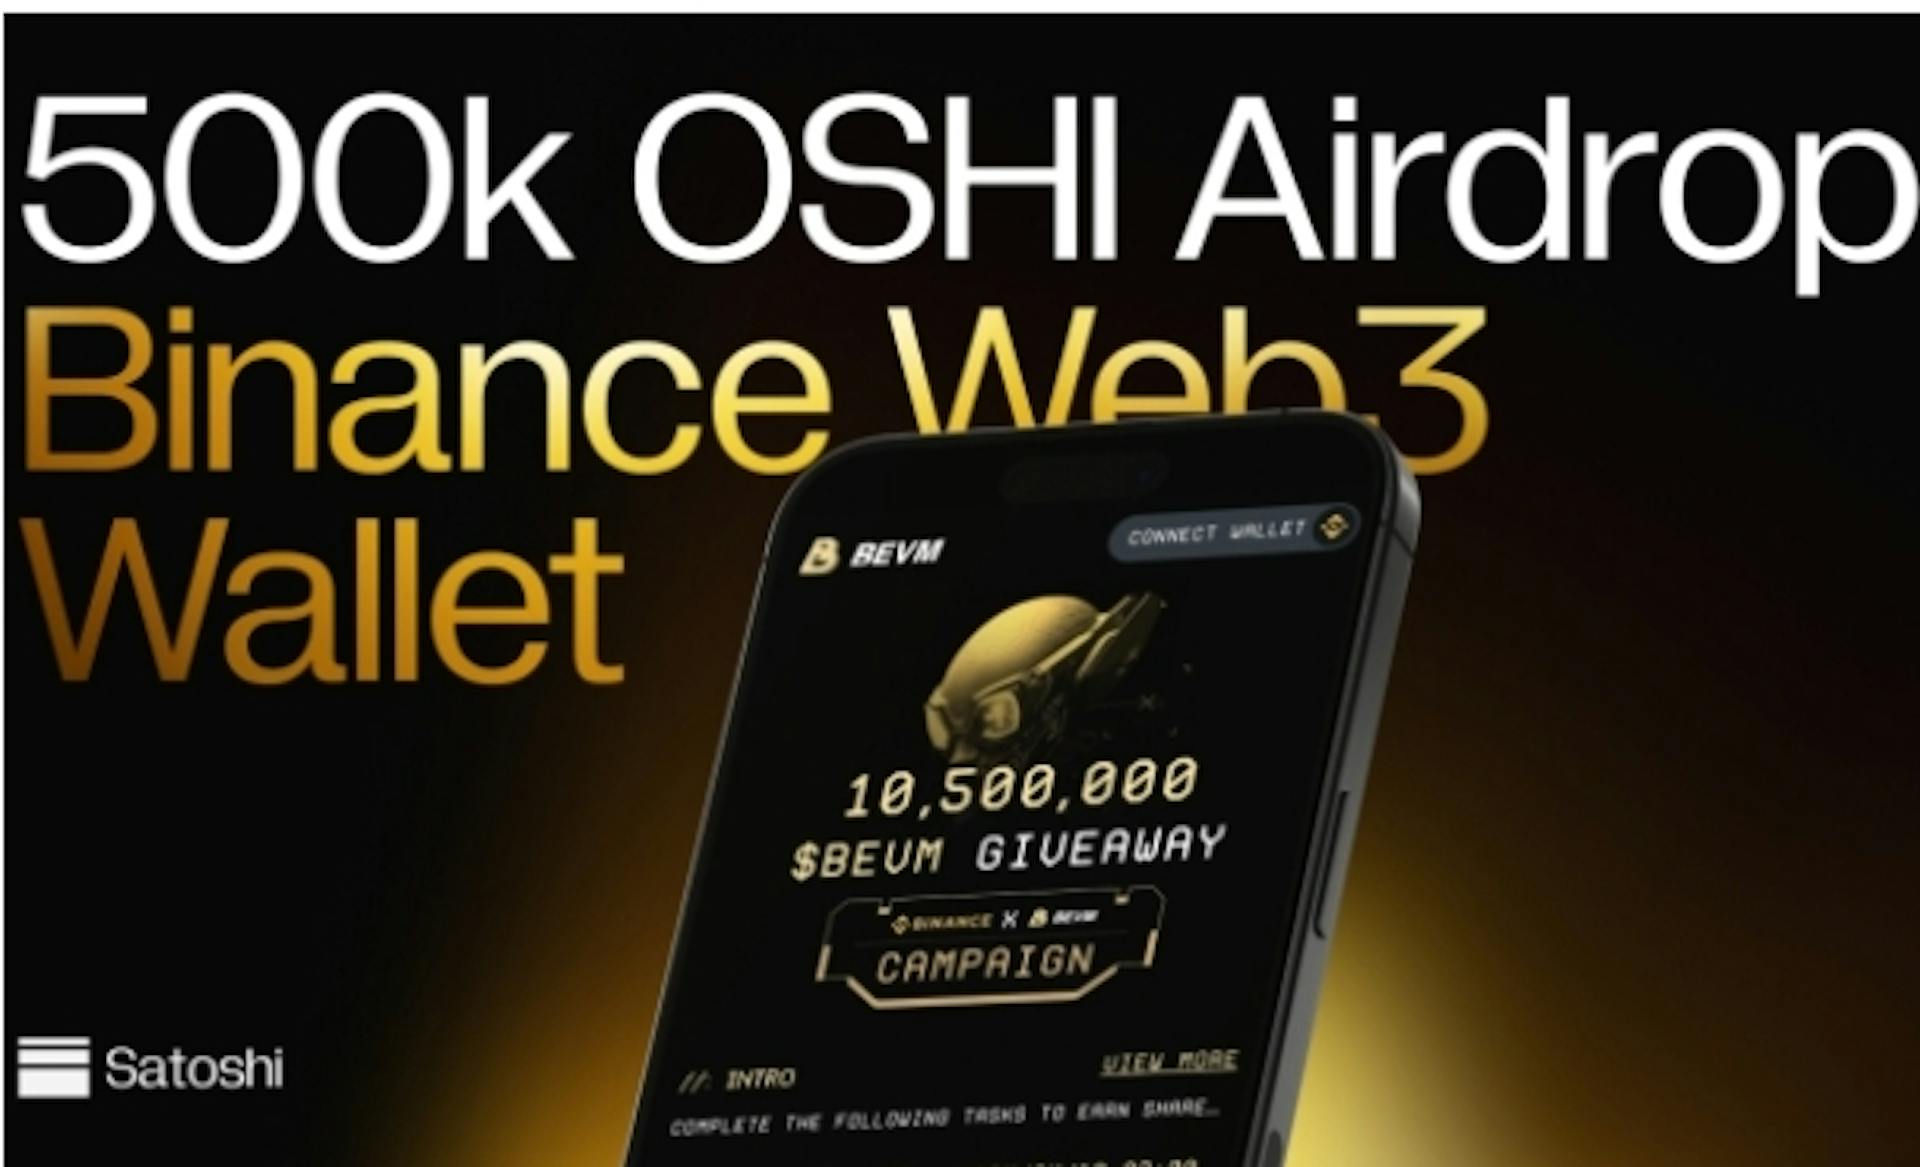 featured image - Giao thức Satoshi: CDP đầu tiên trên Bitcoin Layer2, Airdrop 500k OSHI với ví Binance và BEVM